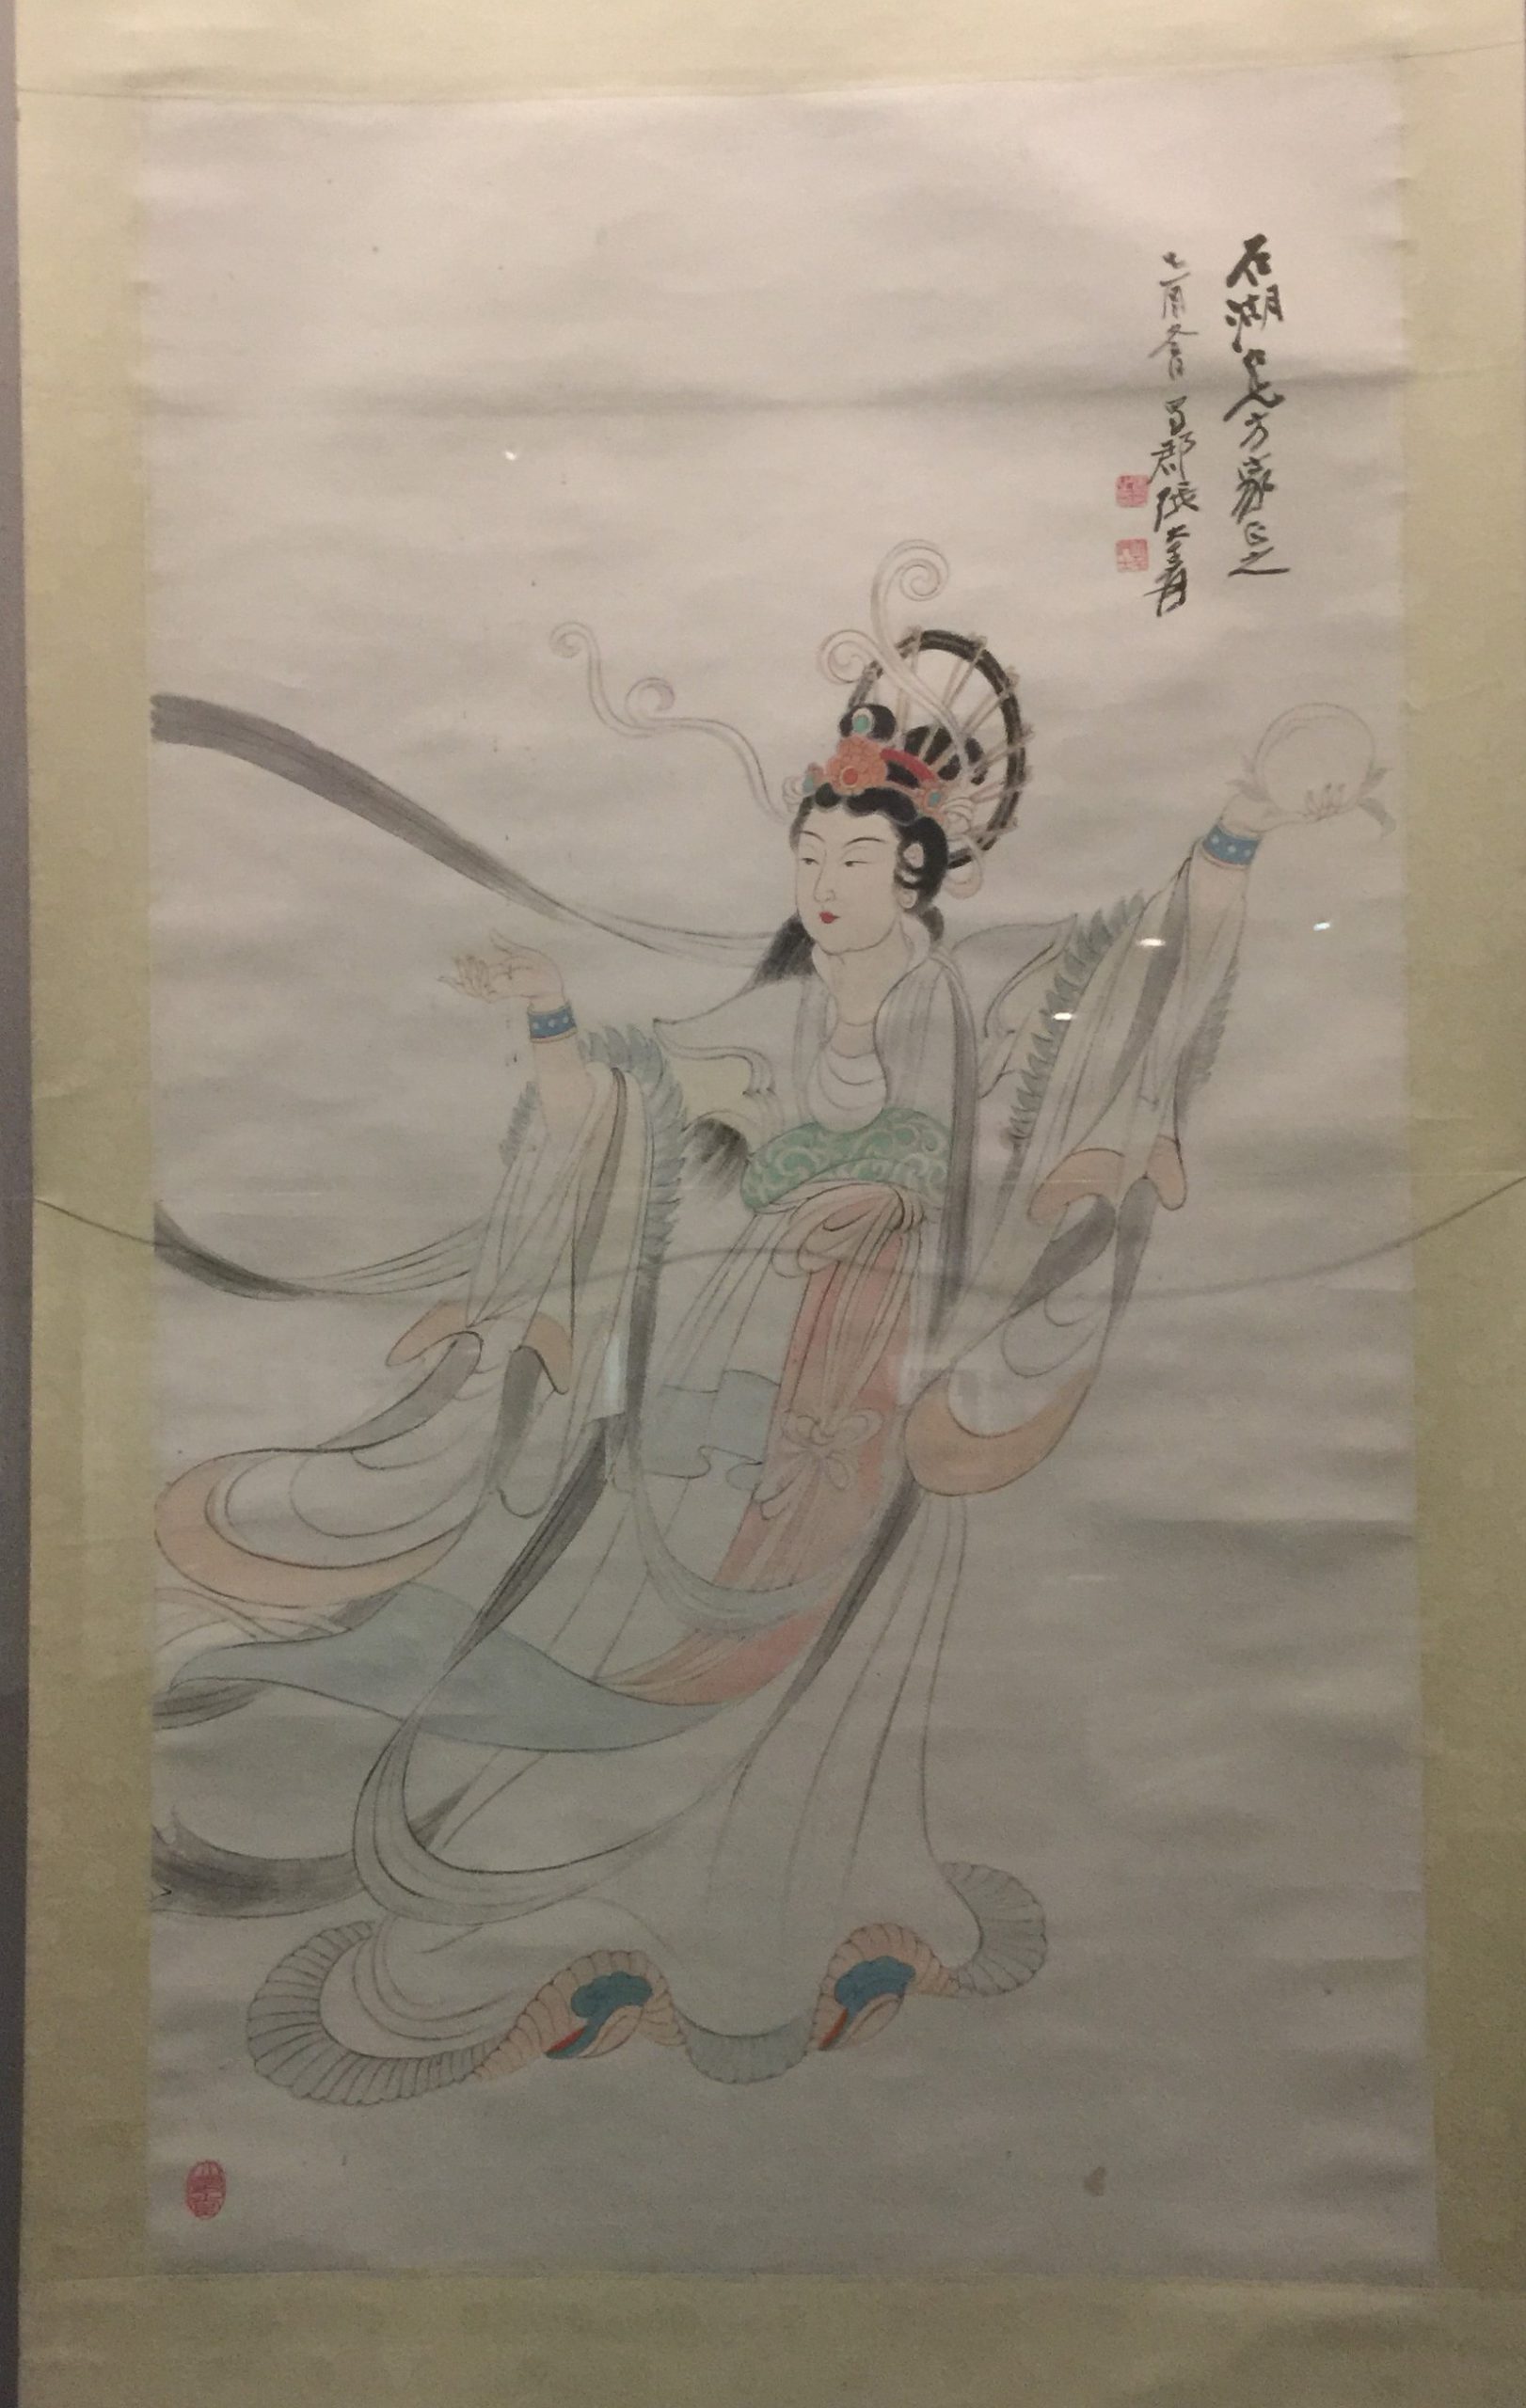 紙女図軸-張大千芸術館-四川博物院-成都